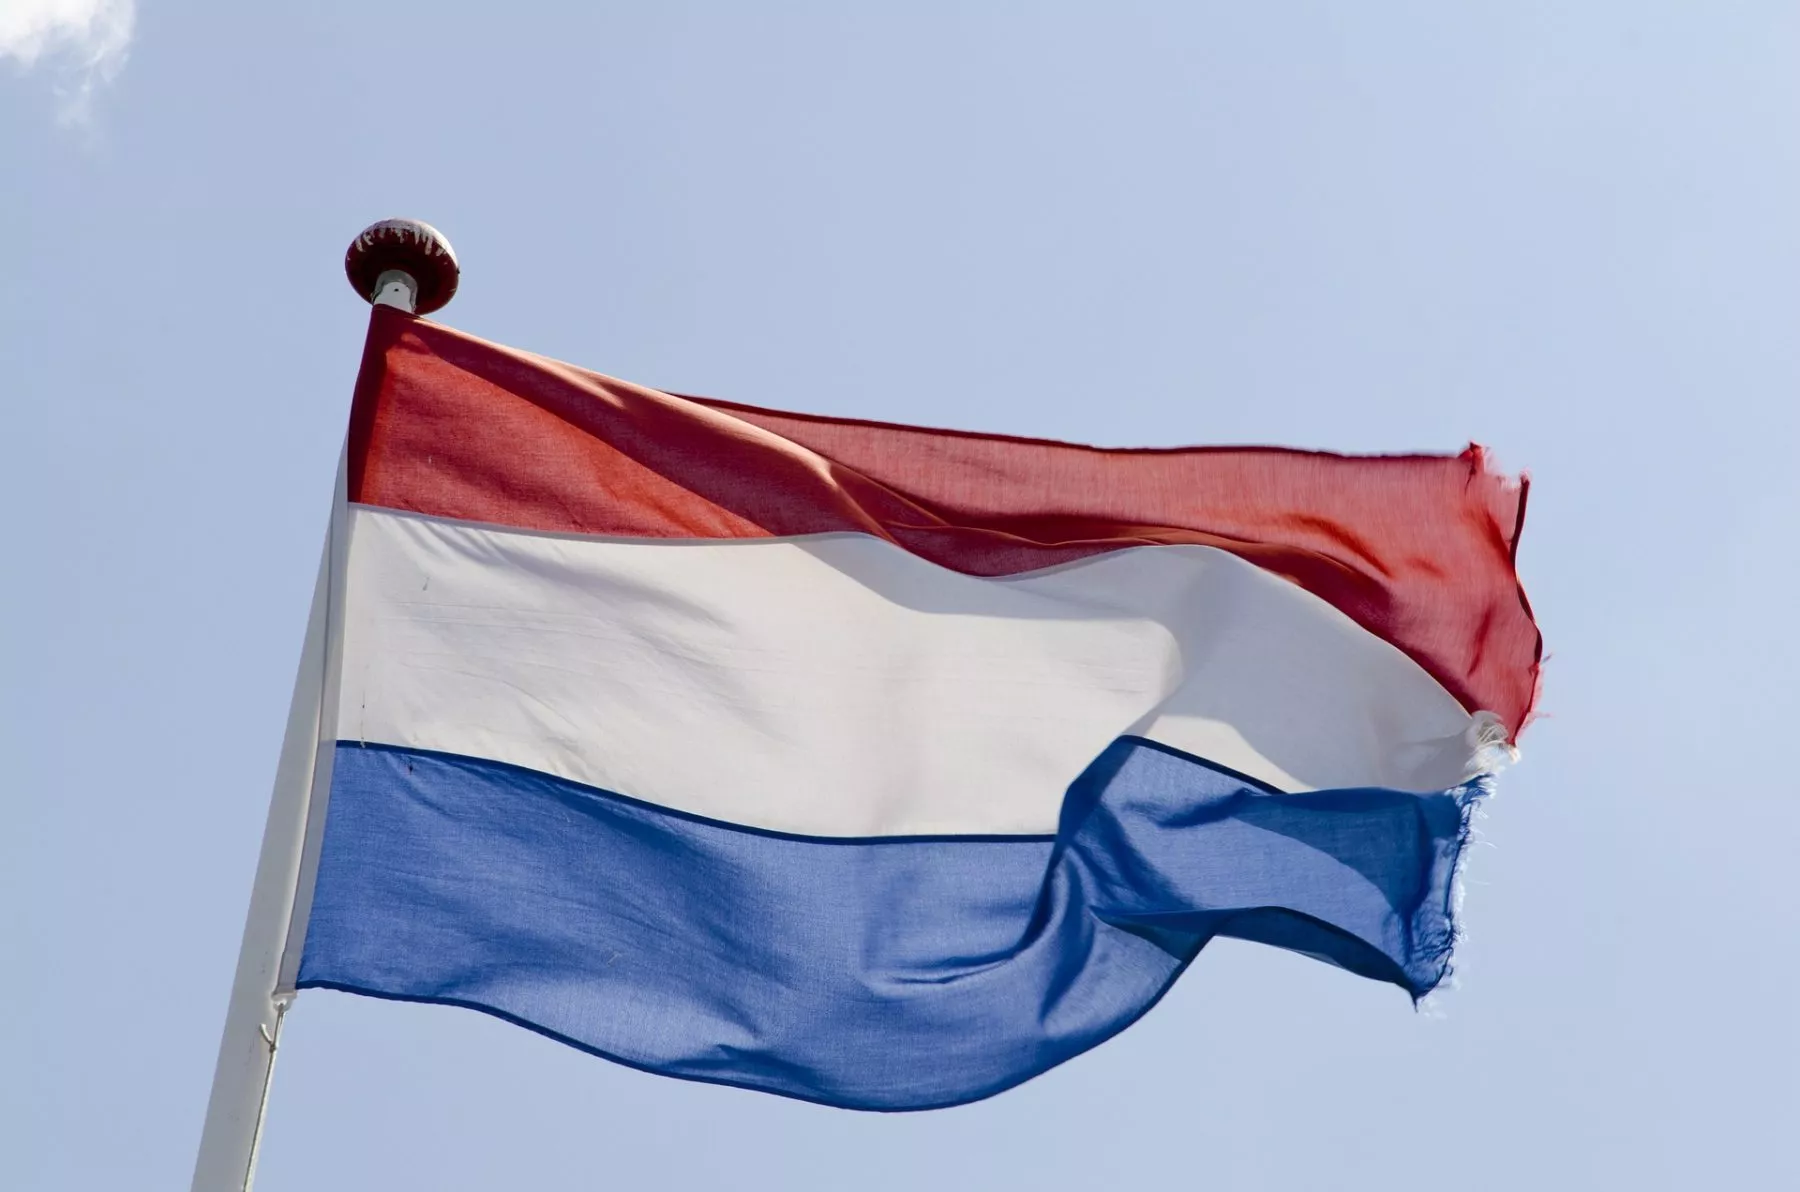 Nederlandse Bitstamp gebruikers klagen over aanvullende KYC-vereisten